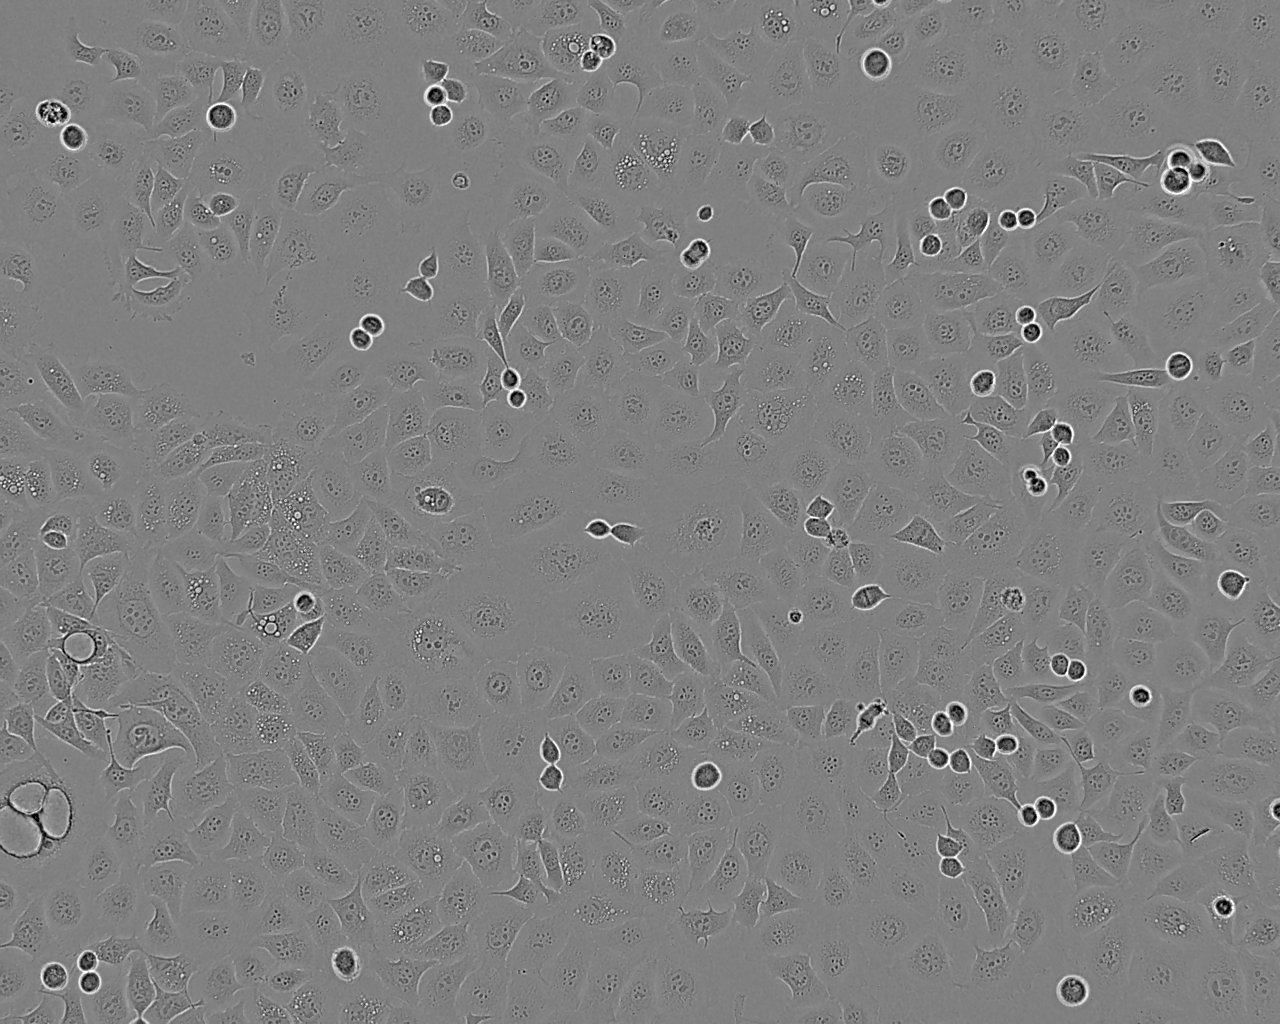 NCI-H1694 Cells|人小细胞肺癌可传代细胞系,NCI-H1694 Cells